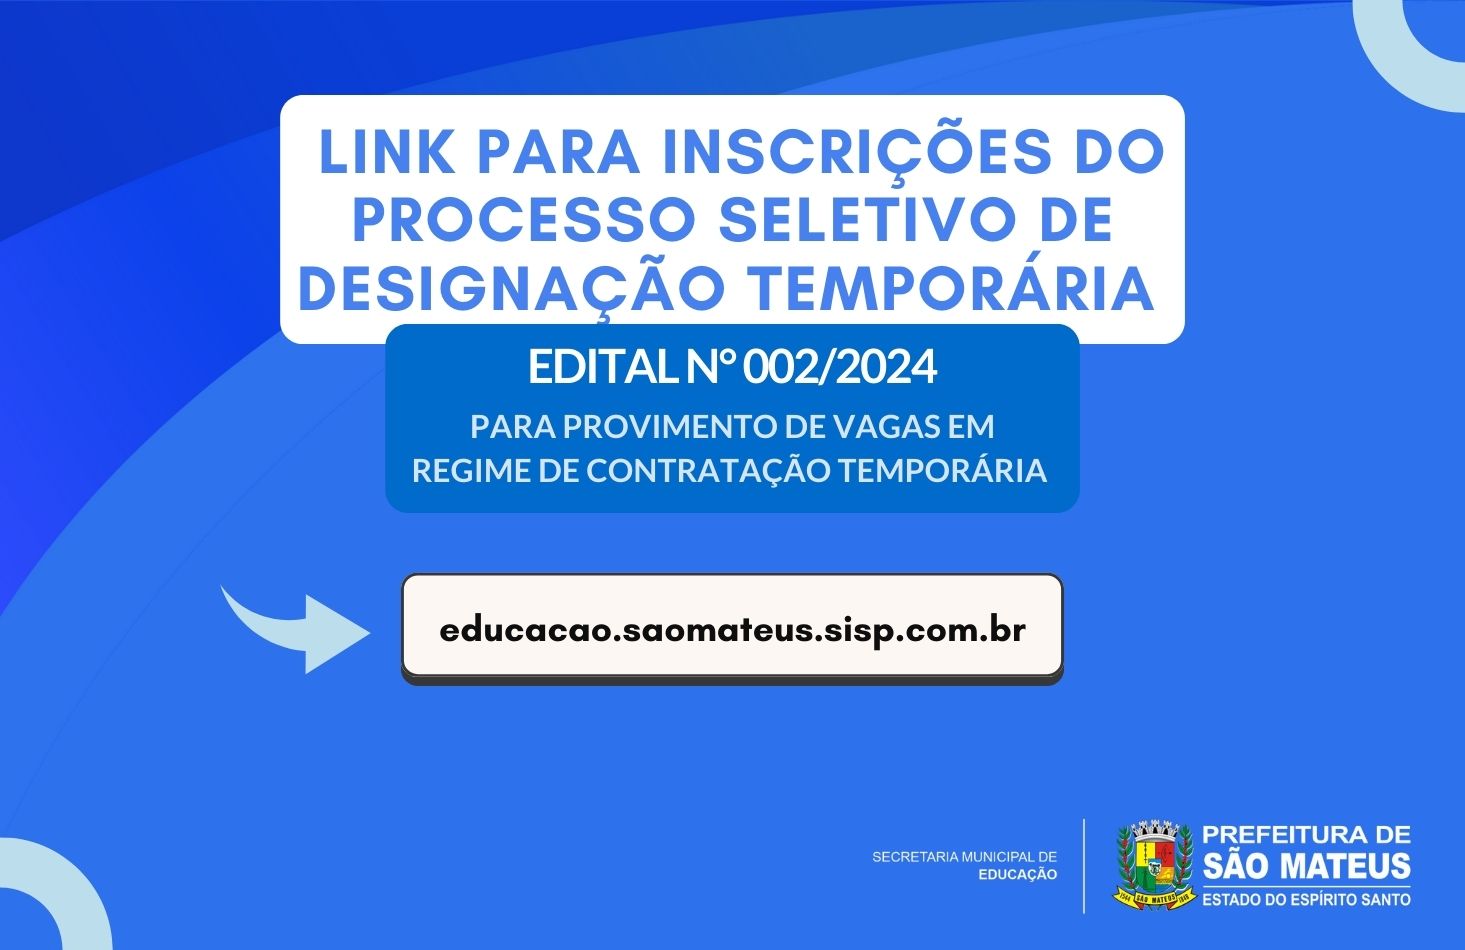 LINK PARA INSCRIÇÕES DO PROCESSO SELETIVO DE DESIGNAÇÃO TEMPORÁRIA - 002/2024